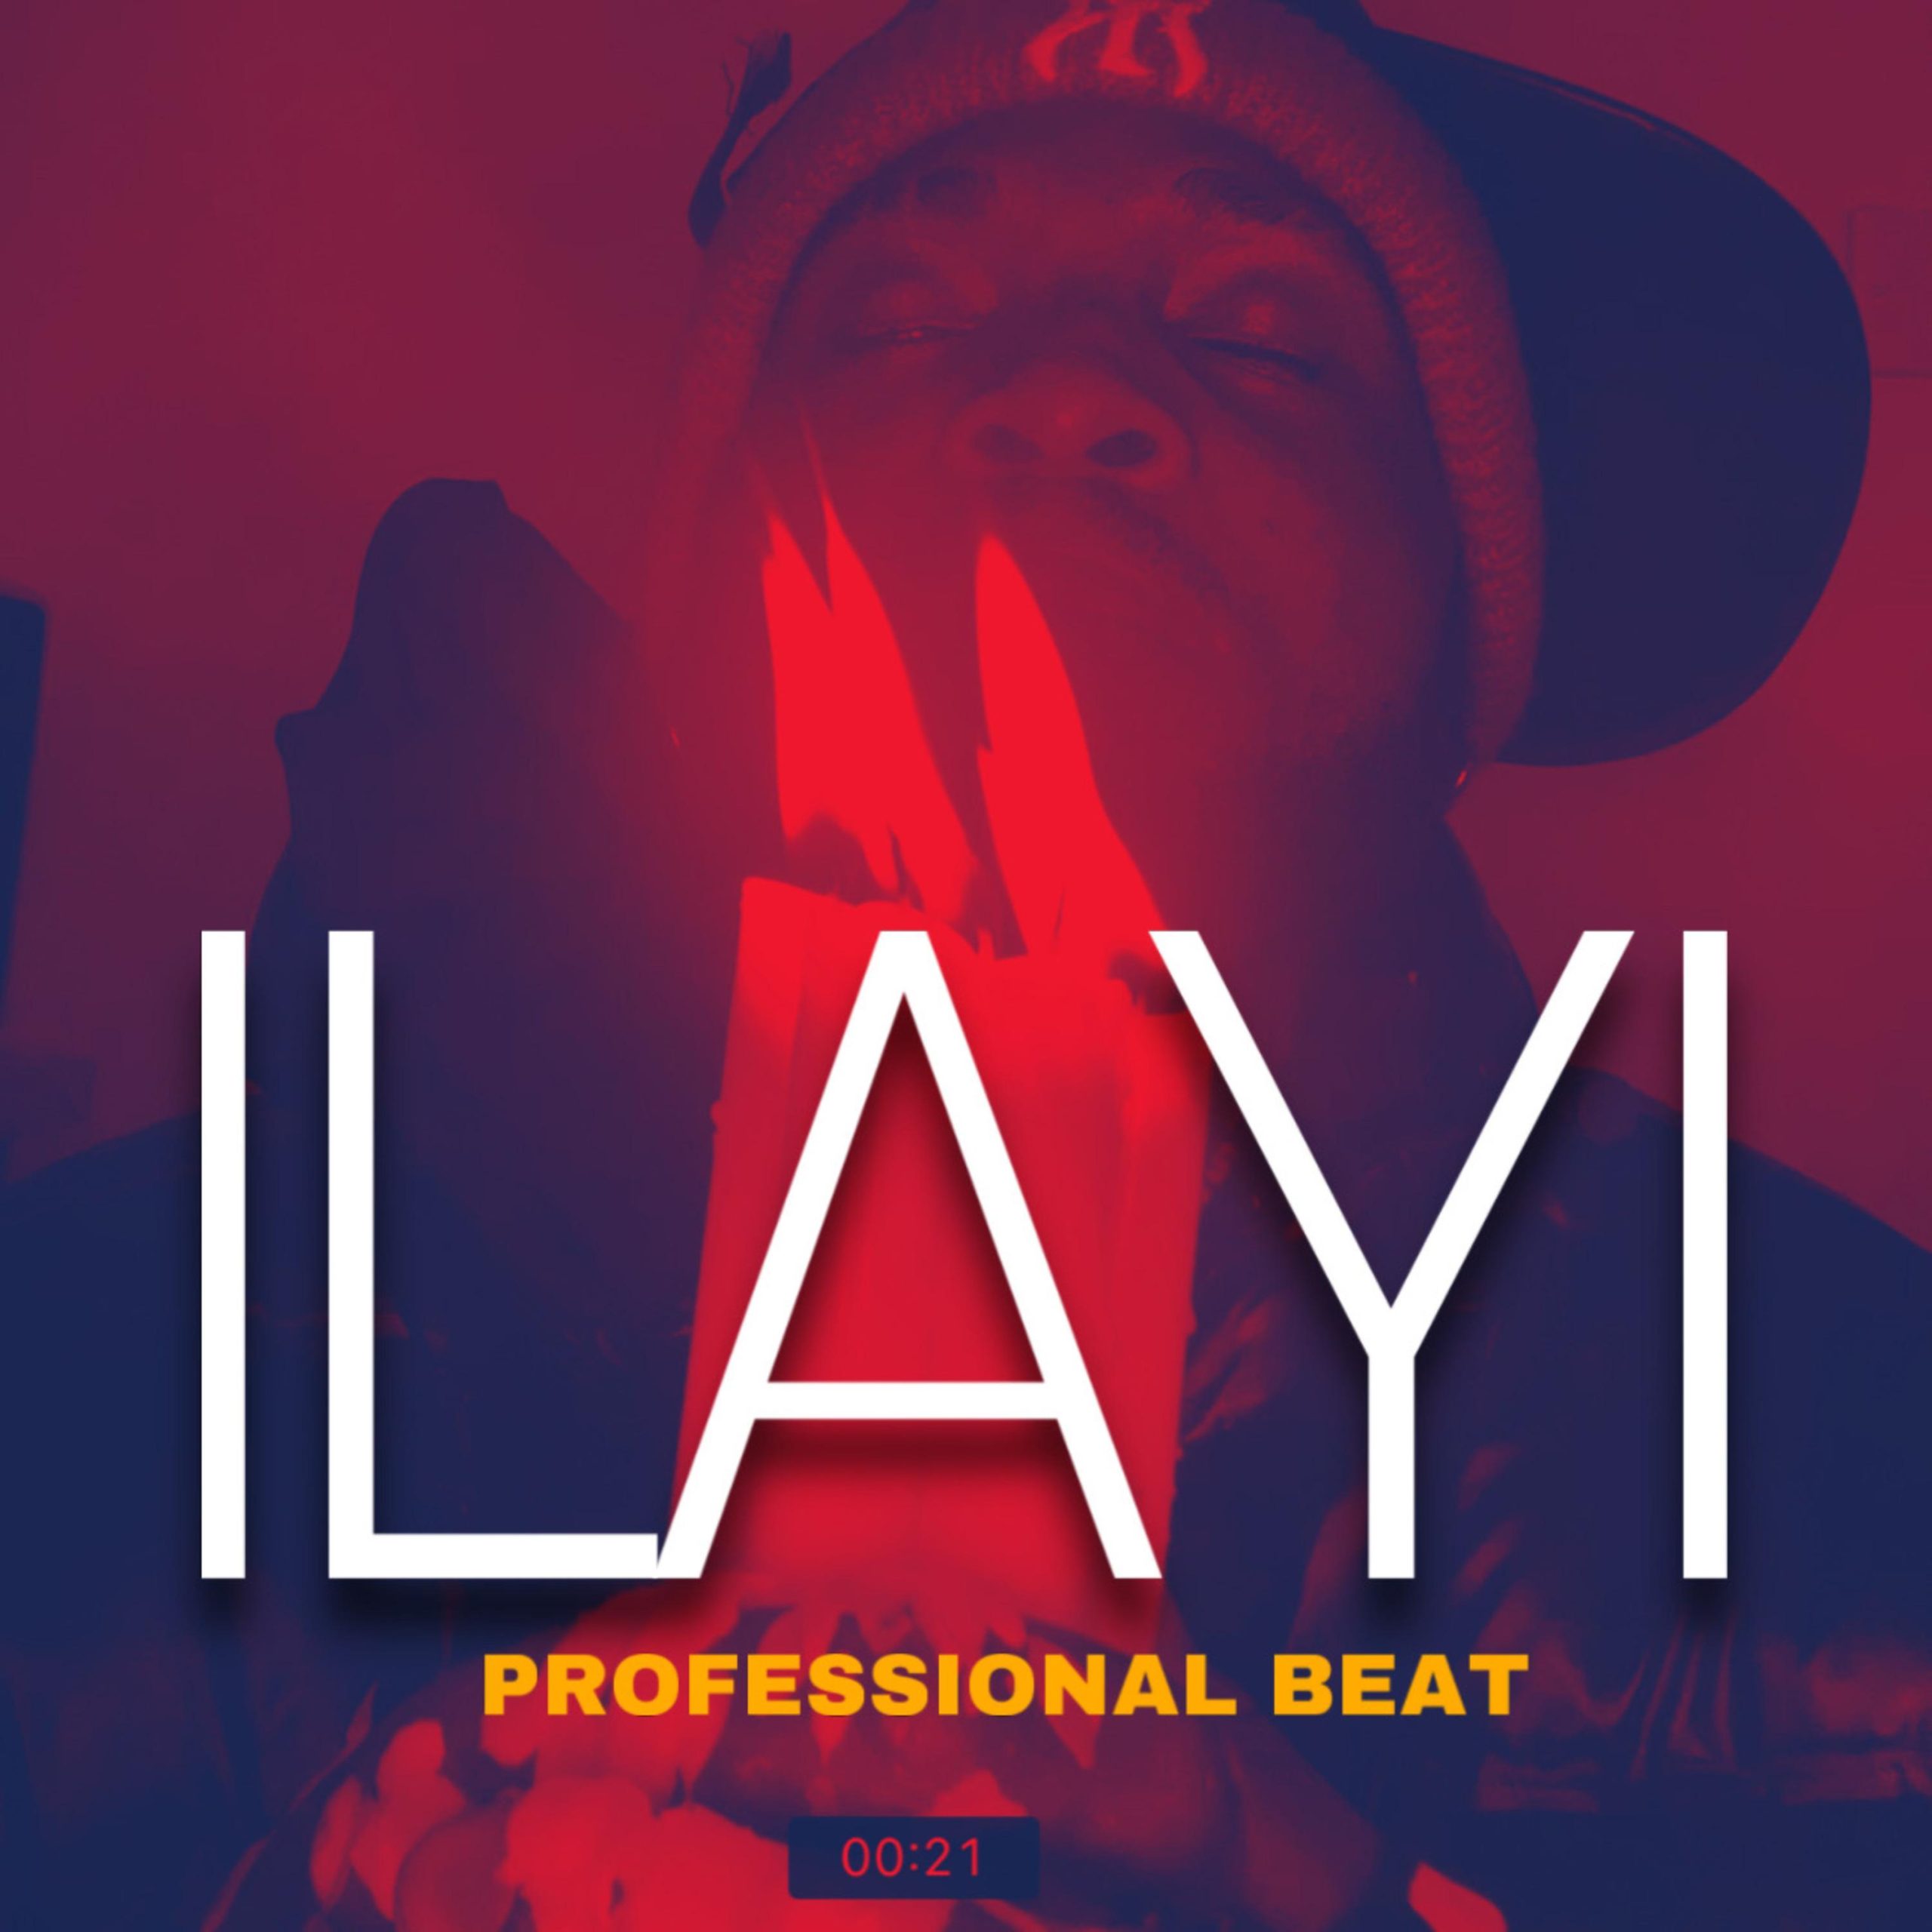 Professional Beat – Ilayi